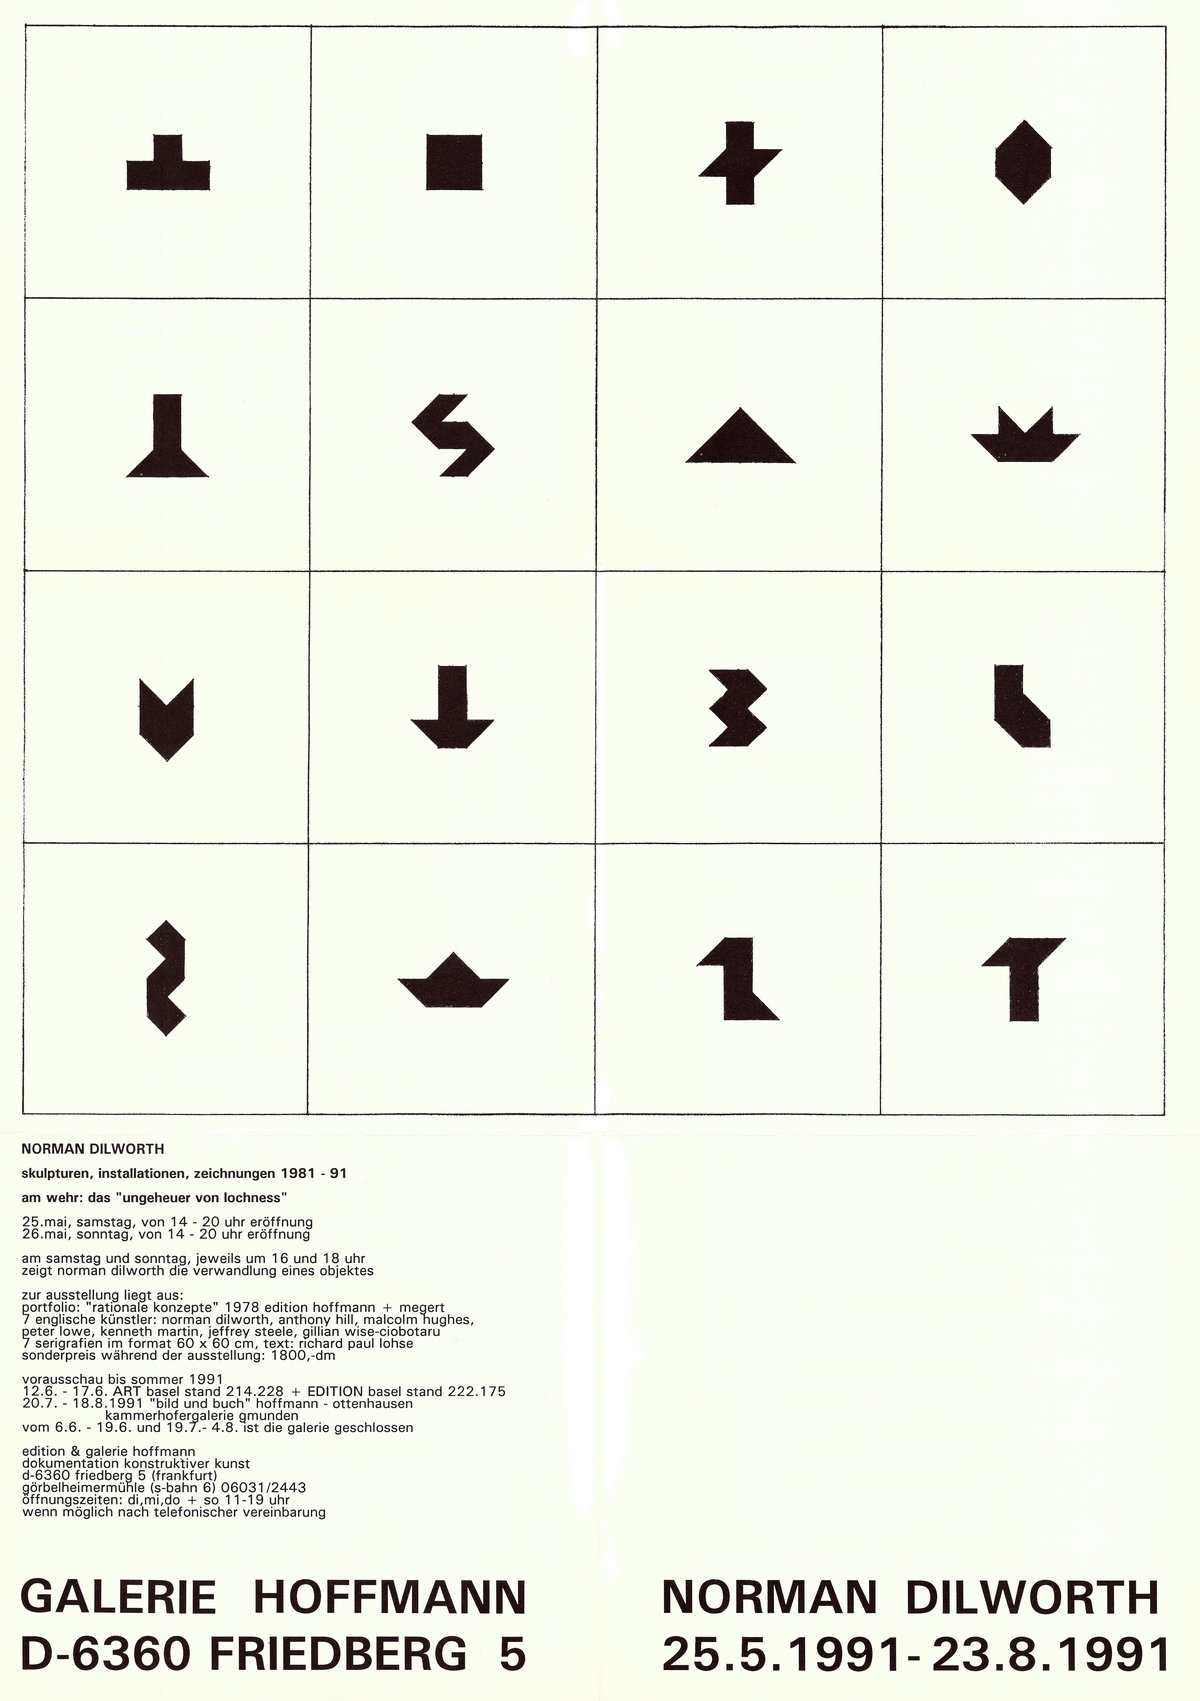 invitation for &quot;norman dilworth – skulpturen, installationen, zeichnungen 1981-91&quot; at edition &amp; galerie hoffmann, 1991